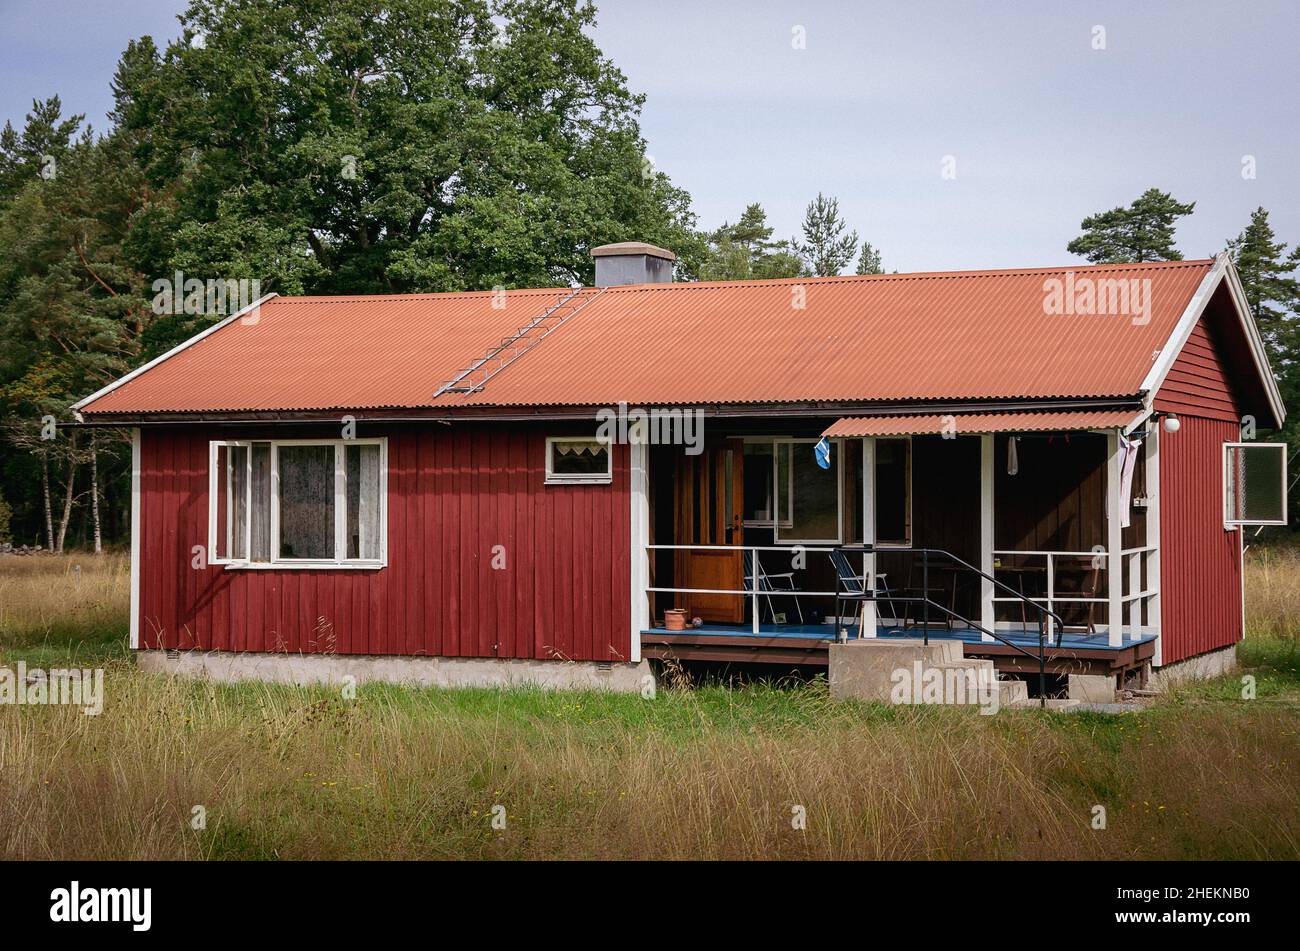 Immagine simbolica: Piccola casa in legno nello stile di una tipica capanna in legno svedese. Foto Stock